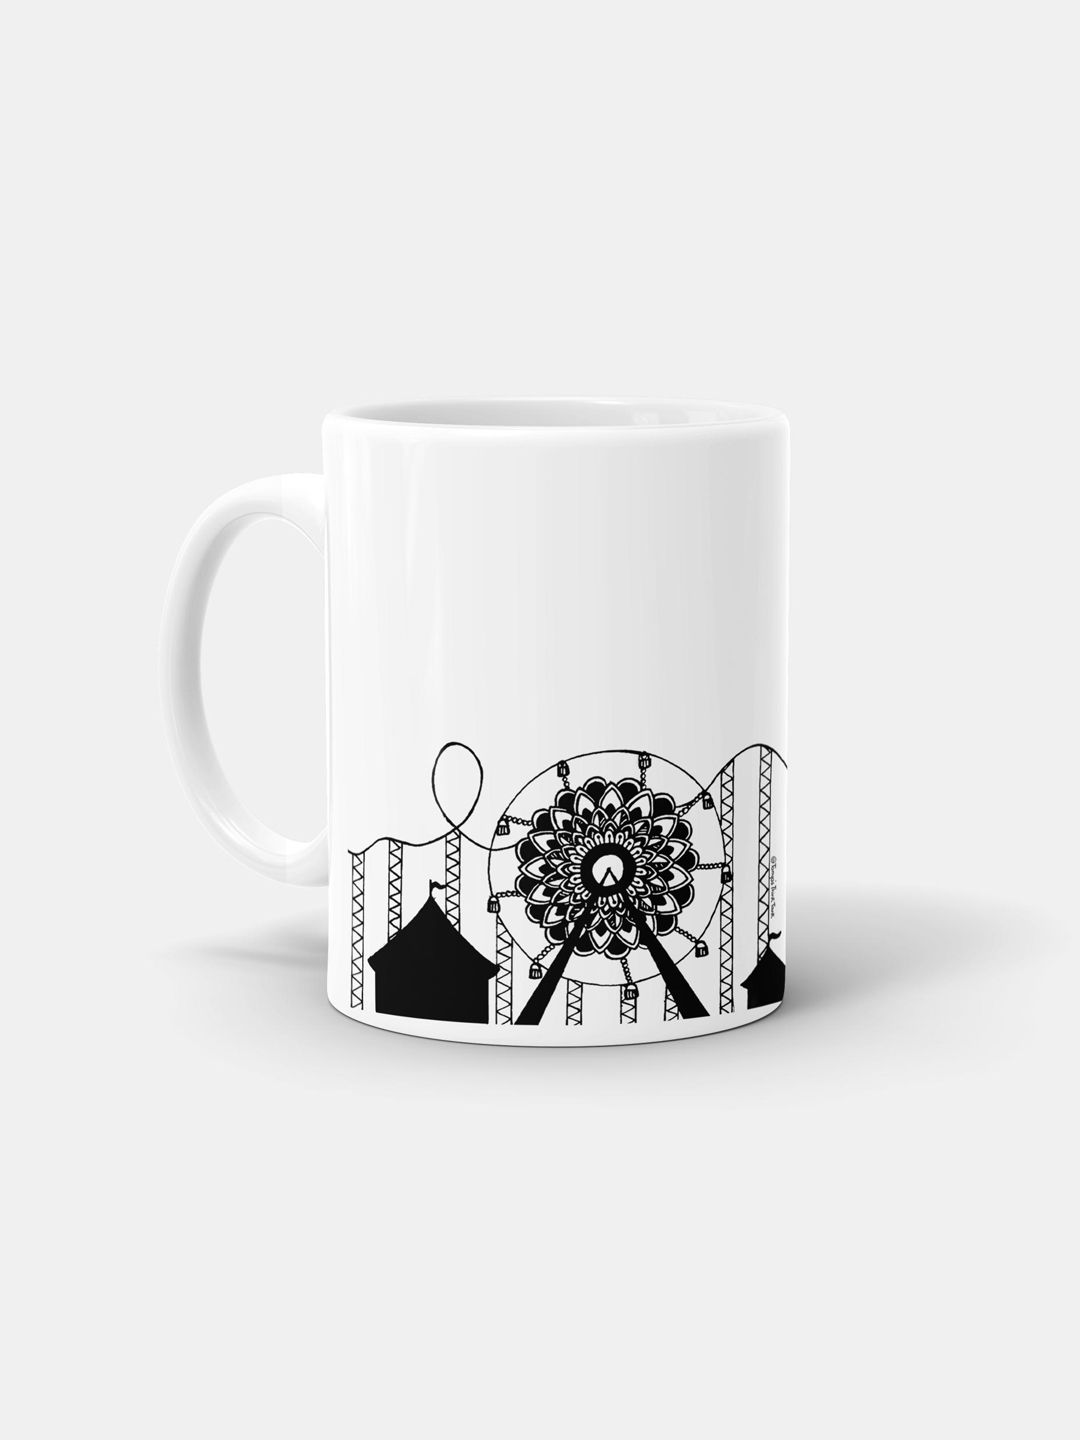 Buy Ferris Wheel - Coffee Mugs White Coffee Mugs Online